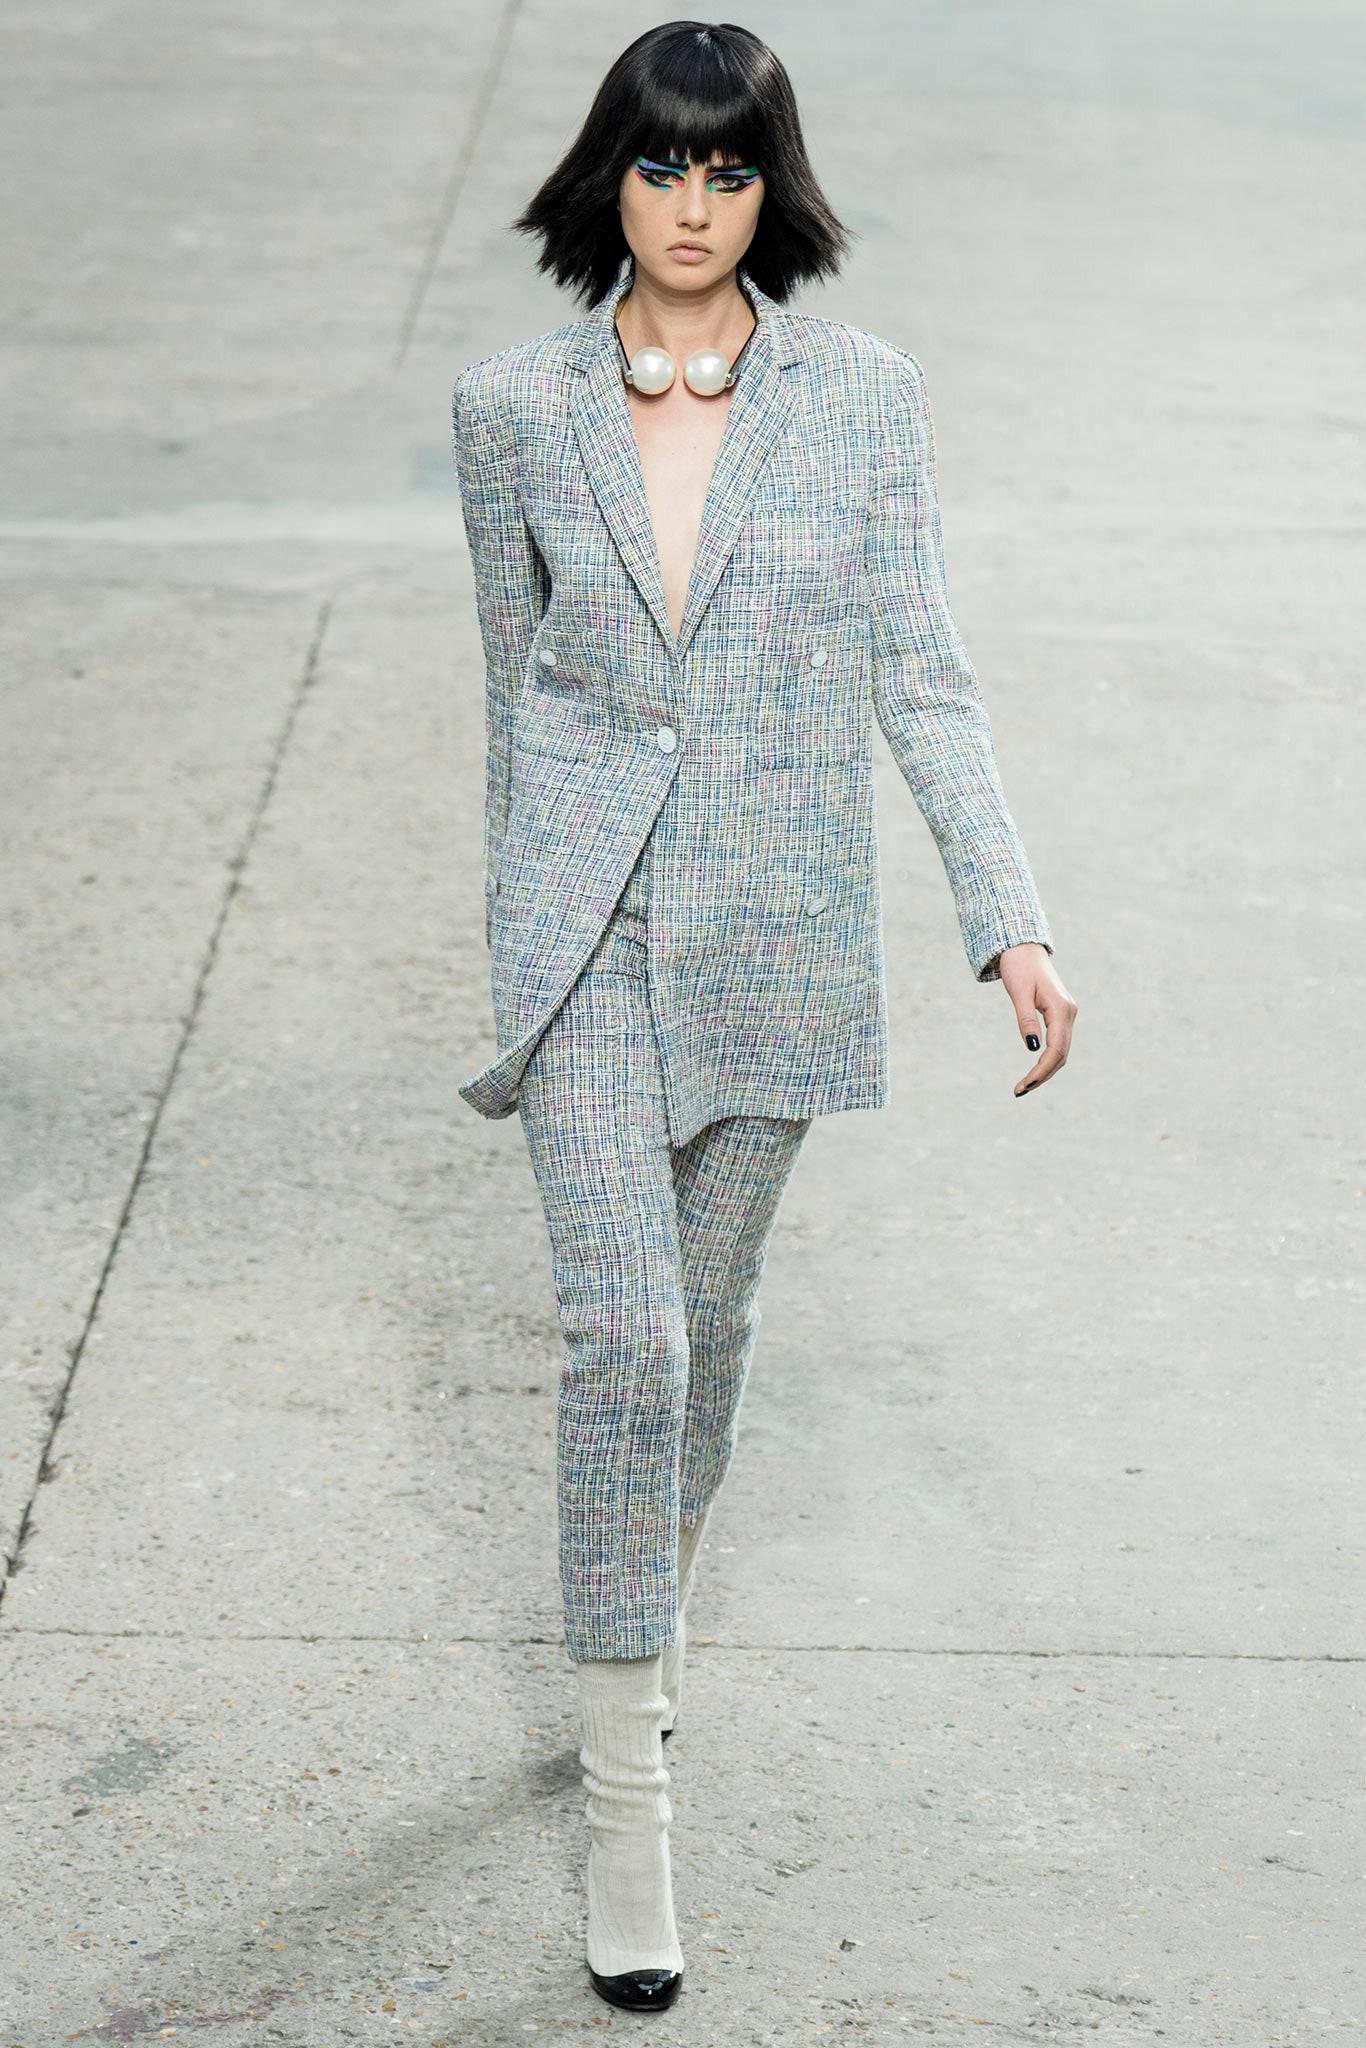 Klassische Chanel Jacke aus marineblauem und schwarzem Tweed aus der CONTEMPORARY ART Collection'S des Frühjahrs 2014 -- mit trendiger, entspannter Silhouette
Boutique-Preis über 9.000$
- CC-Logo-Tasten
- tonales Seidenfutter
Größenbezeichnung 36